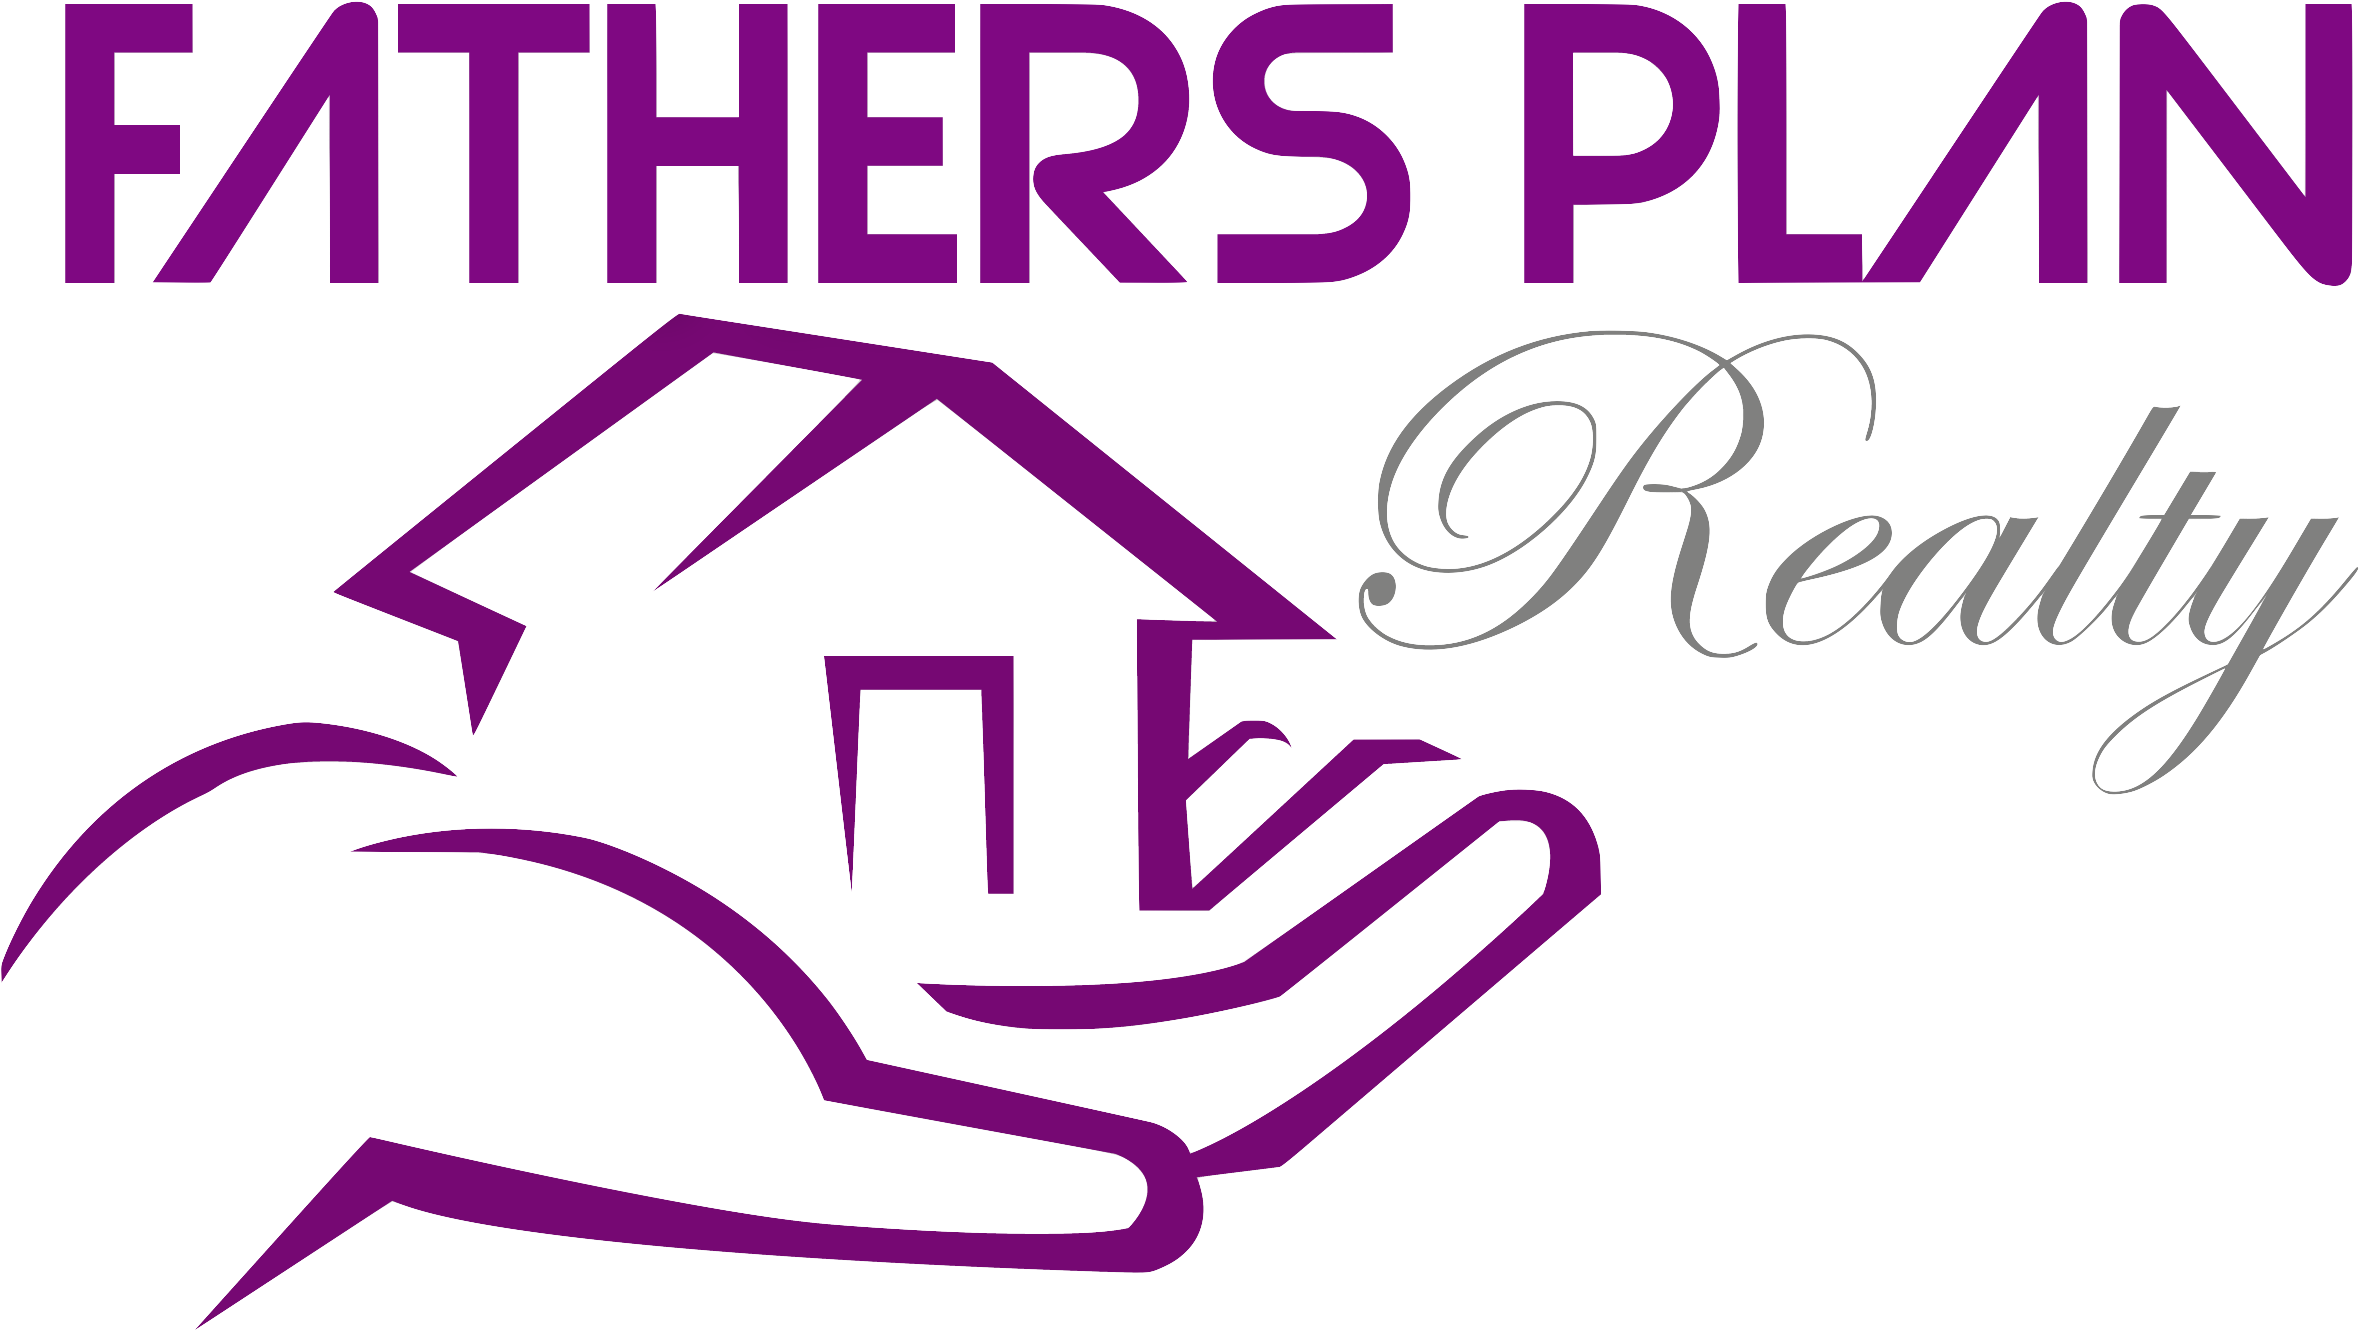 Site Logo - Assisting Hands Home Care (2434x1398)